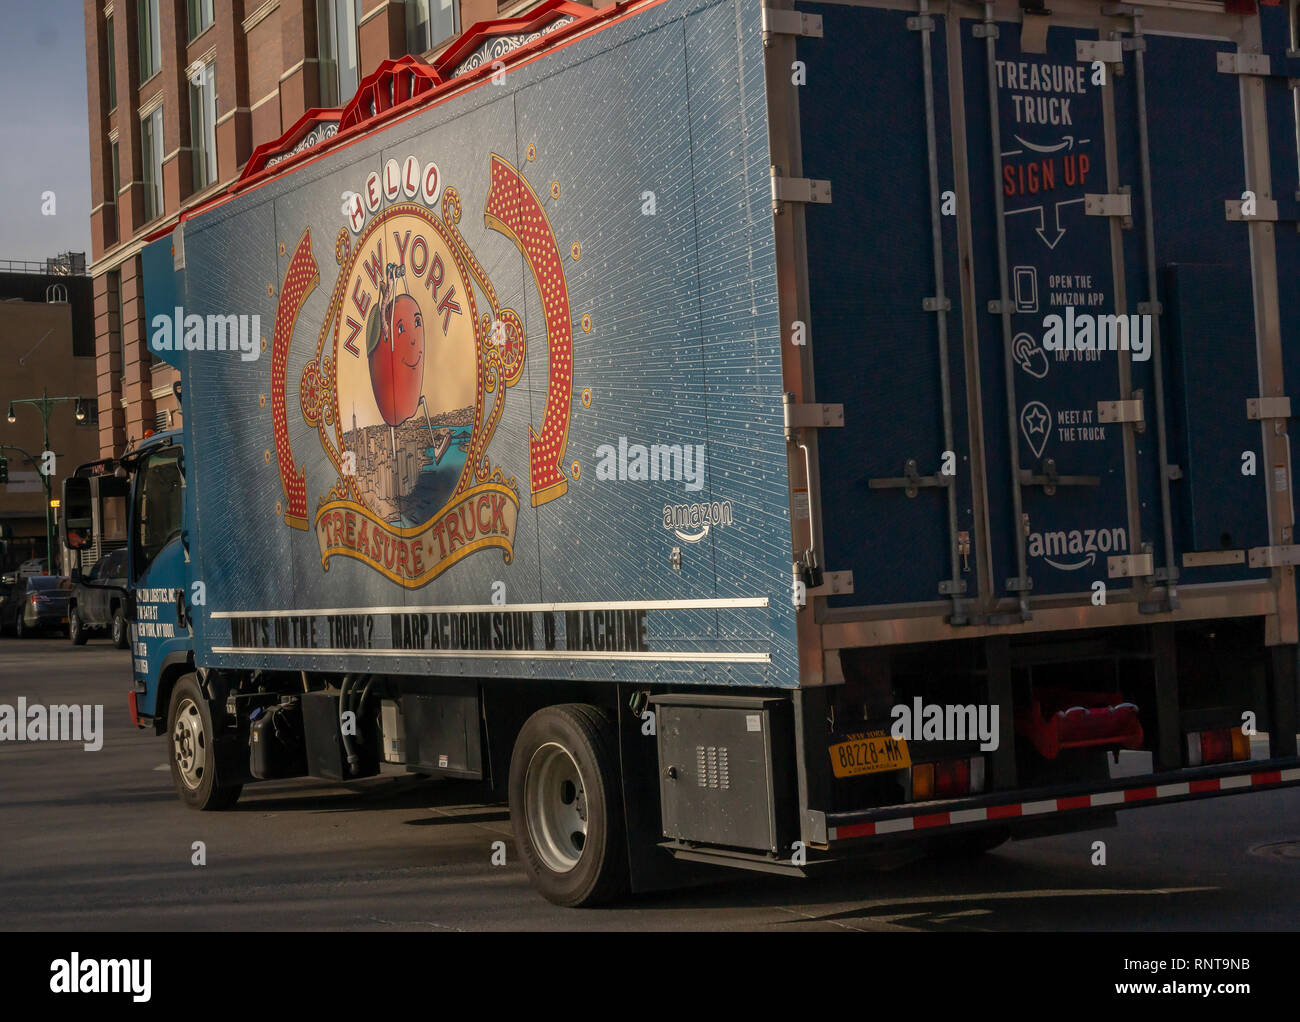 Camion Di Consegna Amazon Immagini e Fotos Stock - Alamy